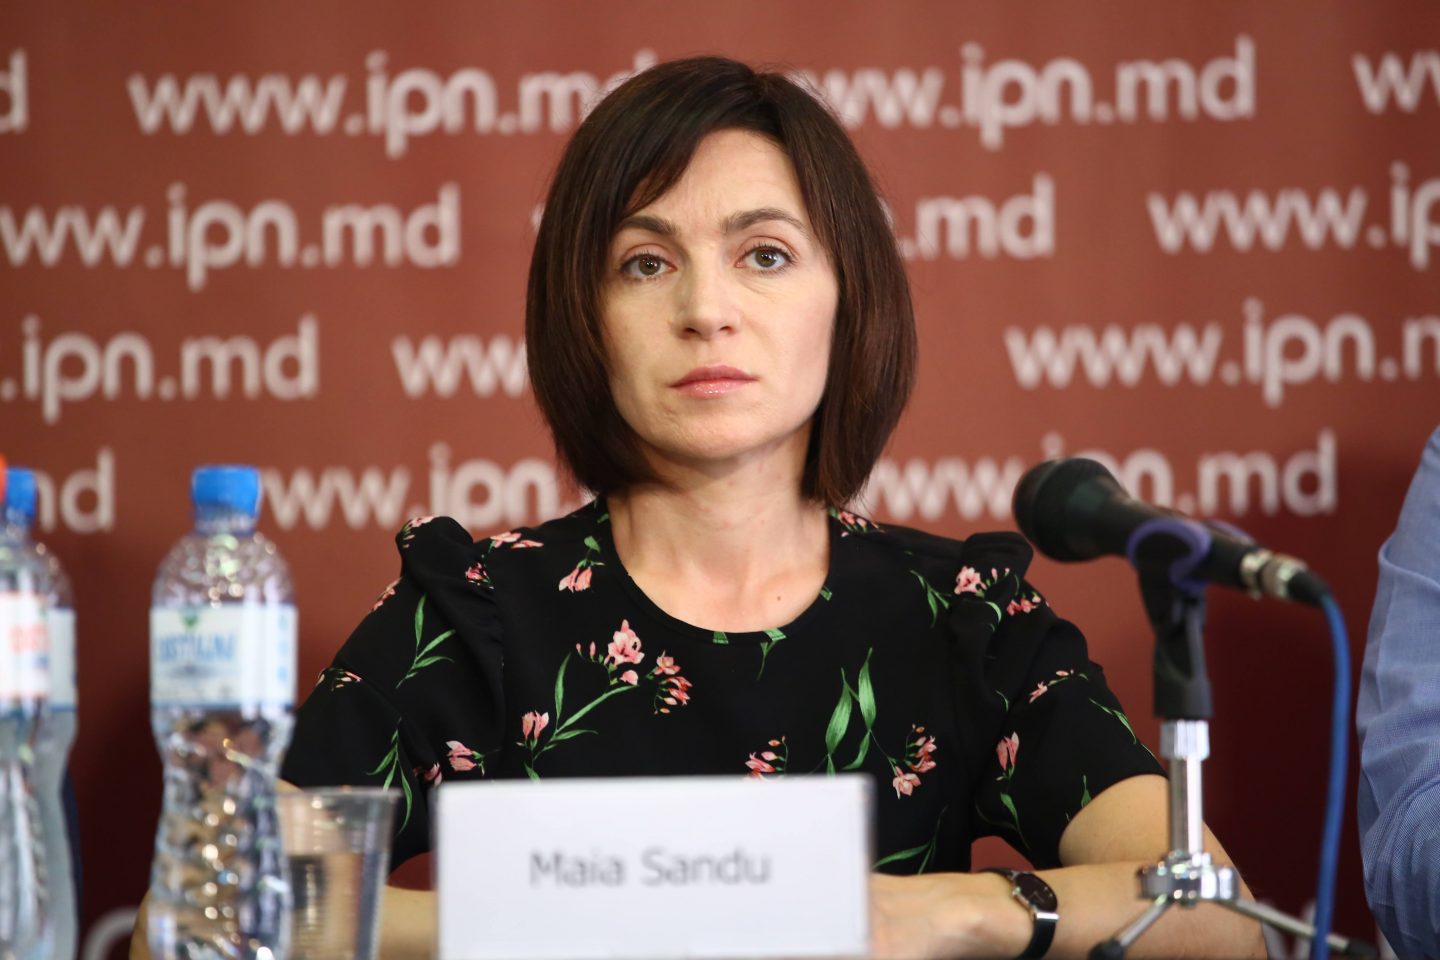 Reprezentant al diasporei: Maia Sandu nu merită votul diasporei, deoarece este o trădătoare și o mincinoasă